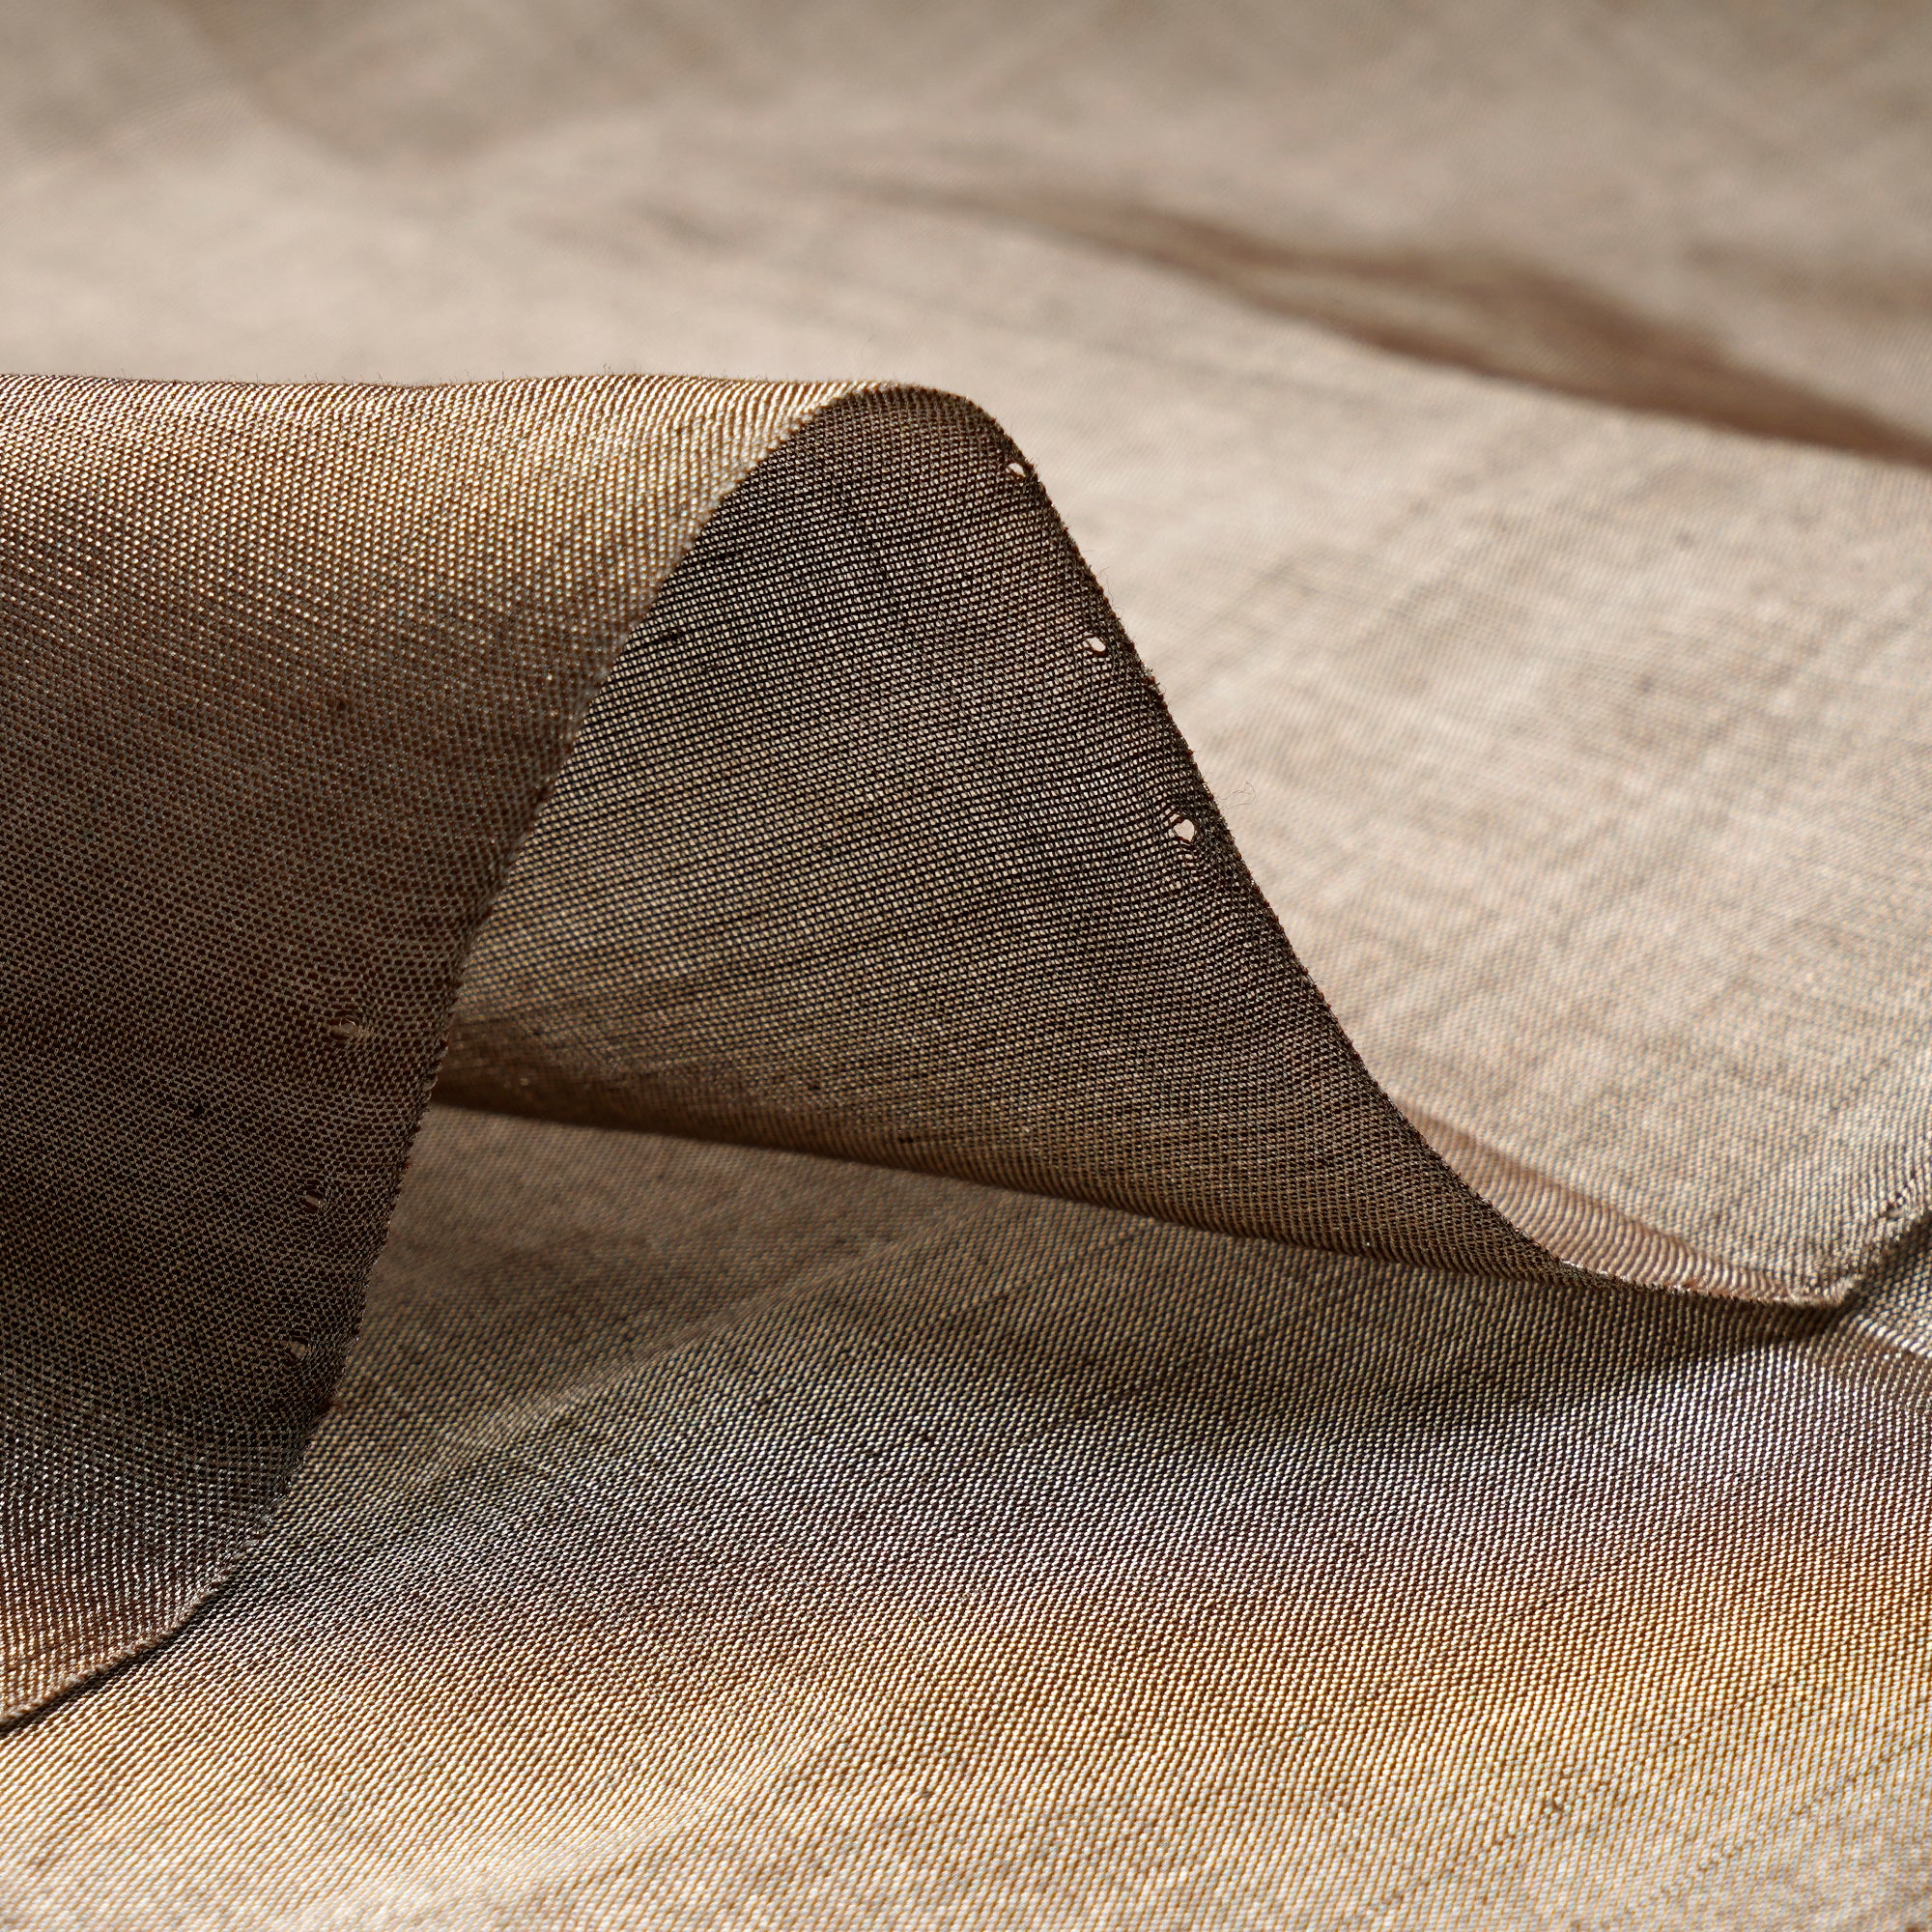 Copper-Gold Handwoven Pure Heavy Tissue Fabric